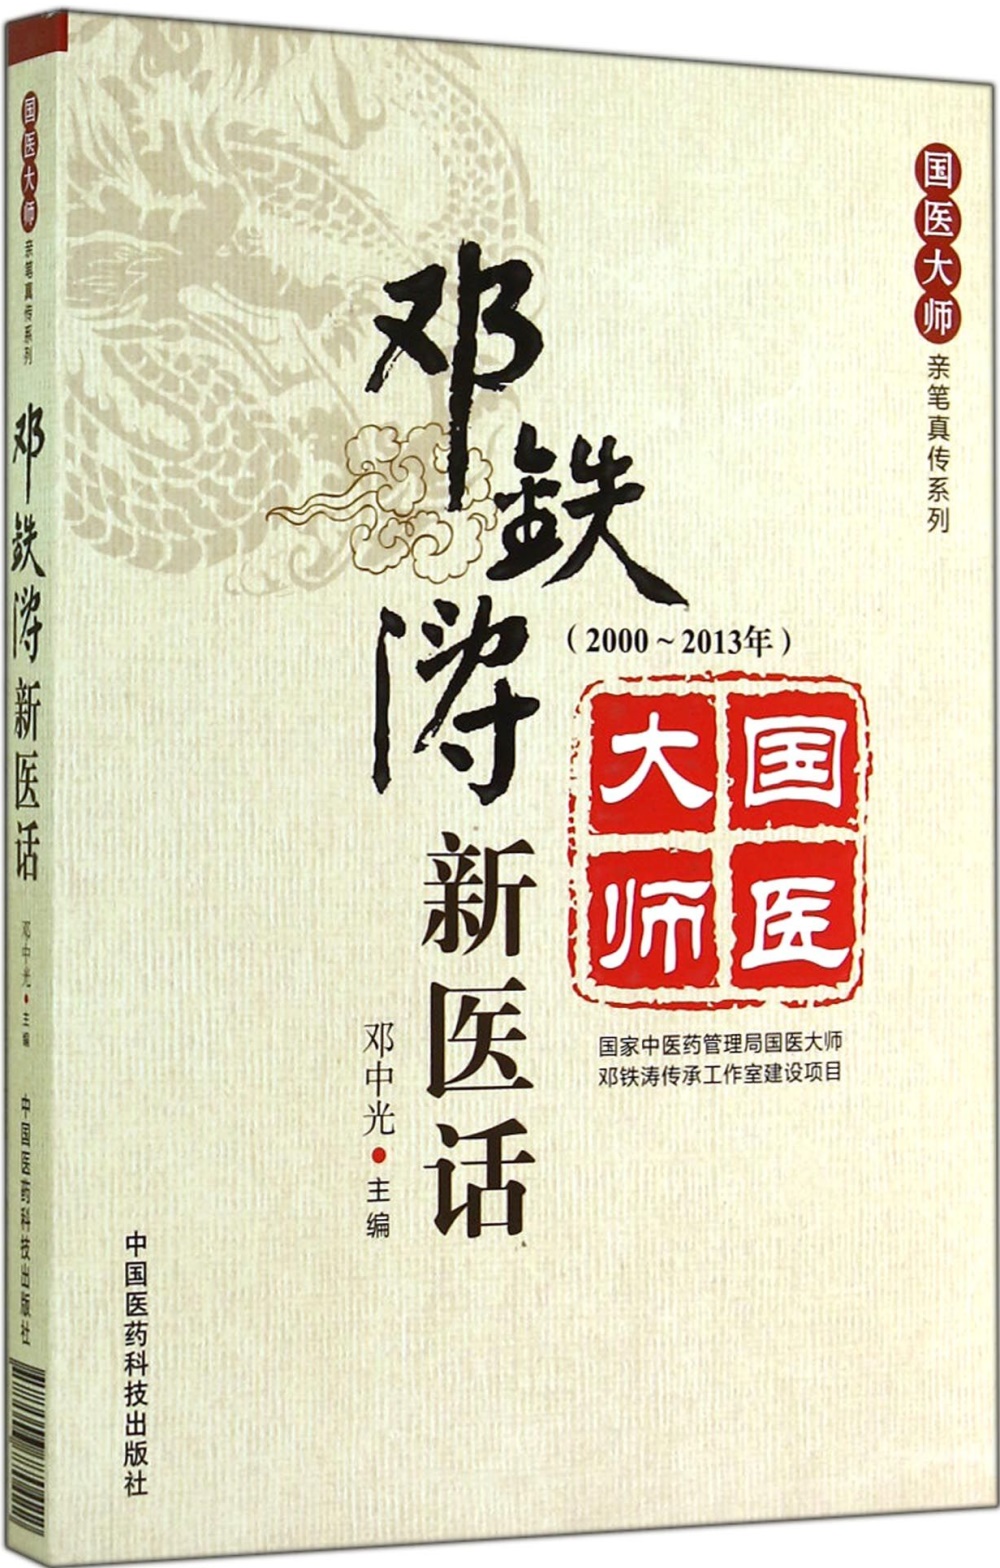 鄧鐵濤新醫話(2000-2013年)